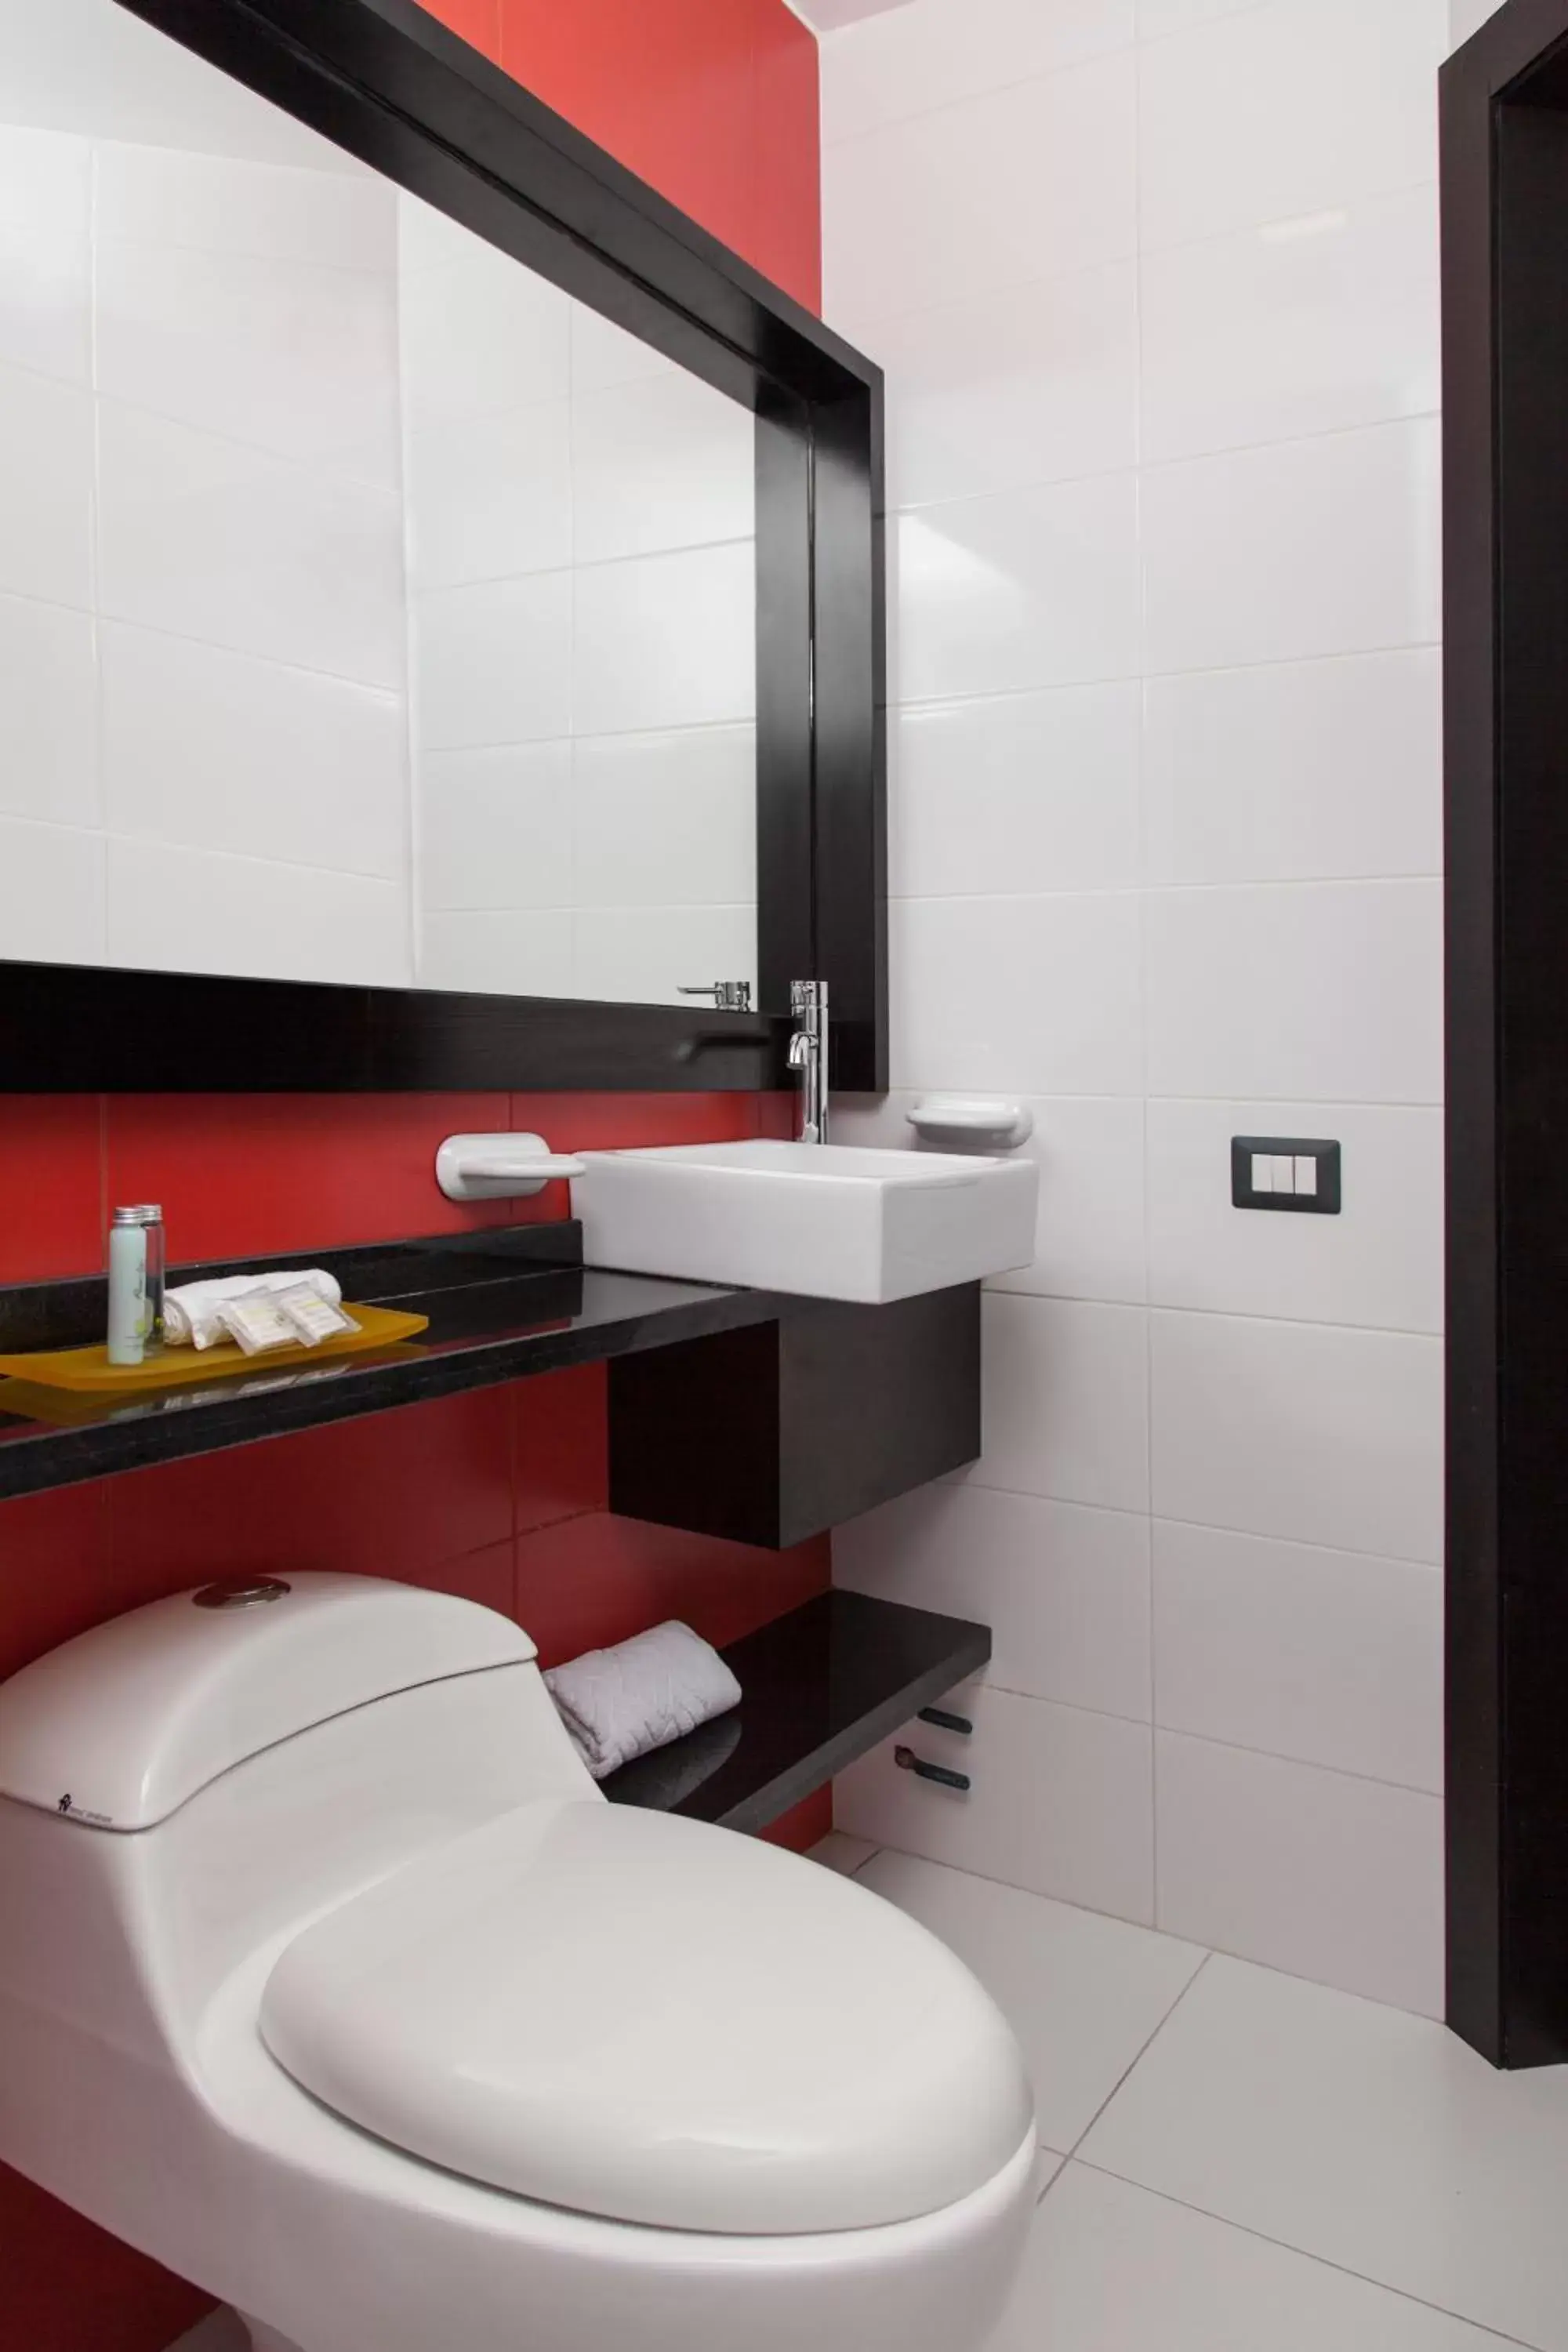 Bathroom in Hotel Finlandia